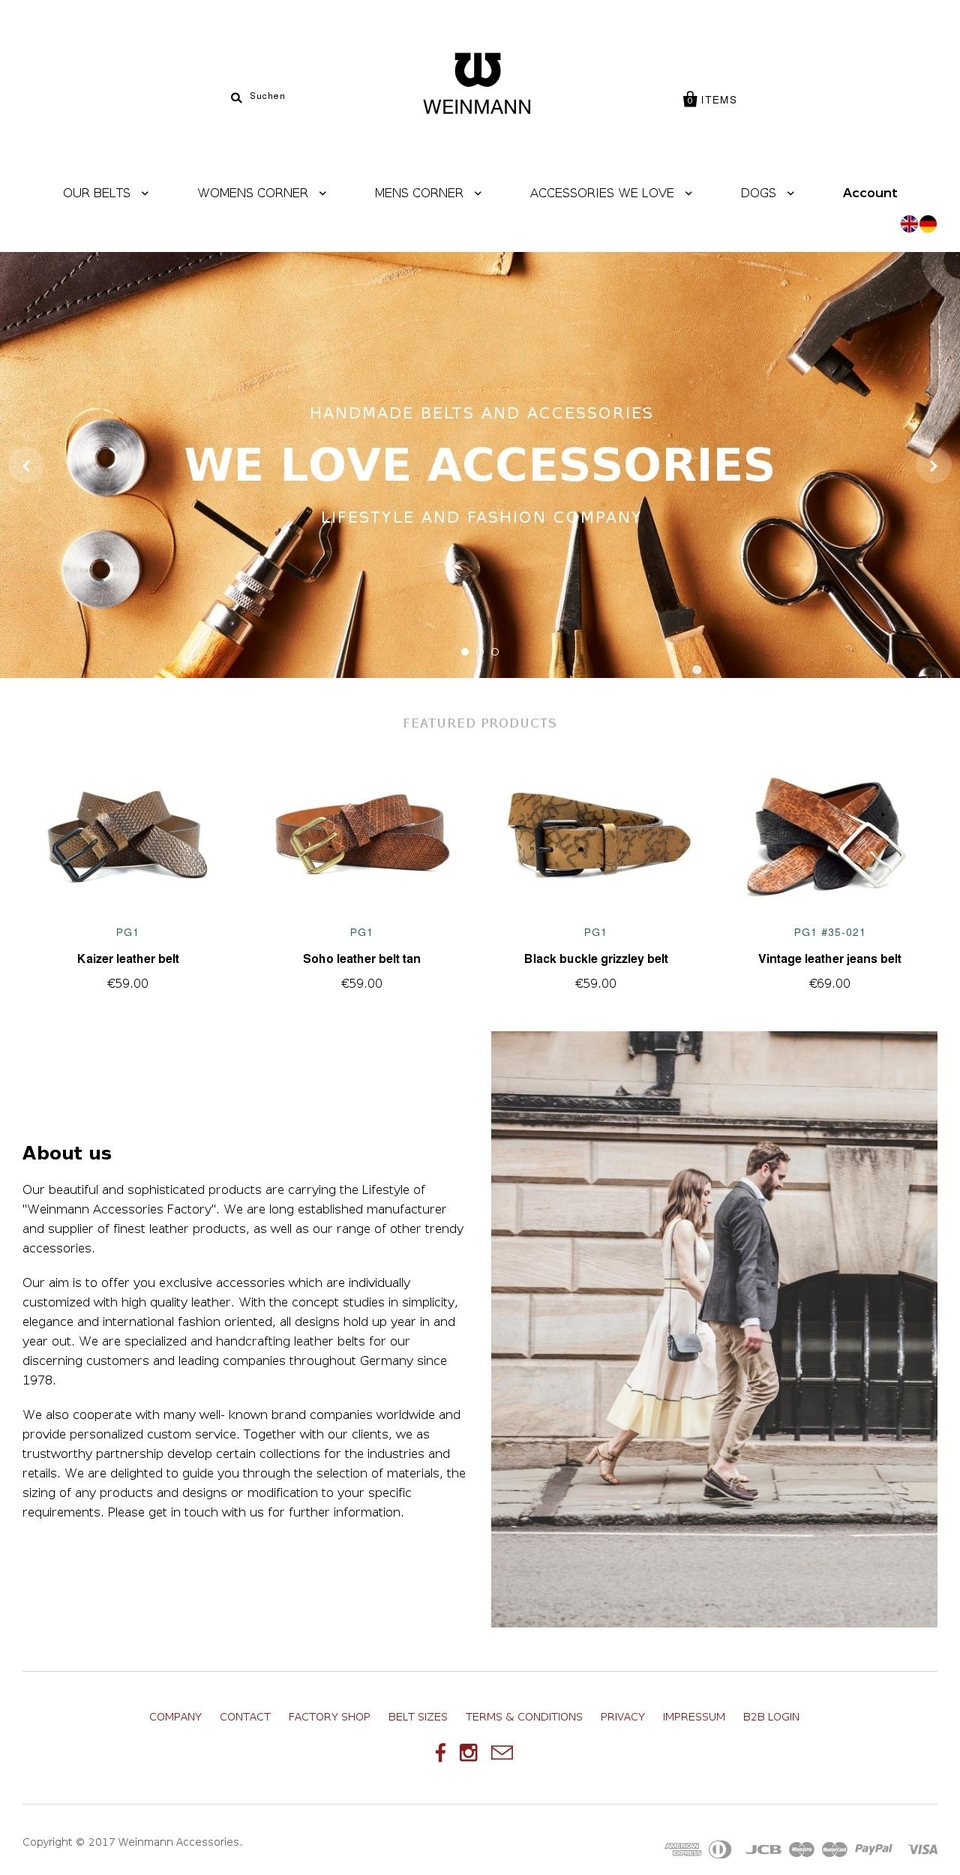 weinmann-accessories.com shopify website screenshot